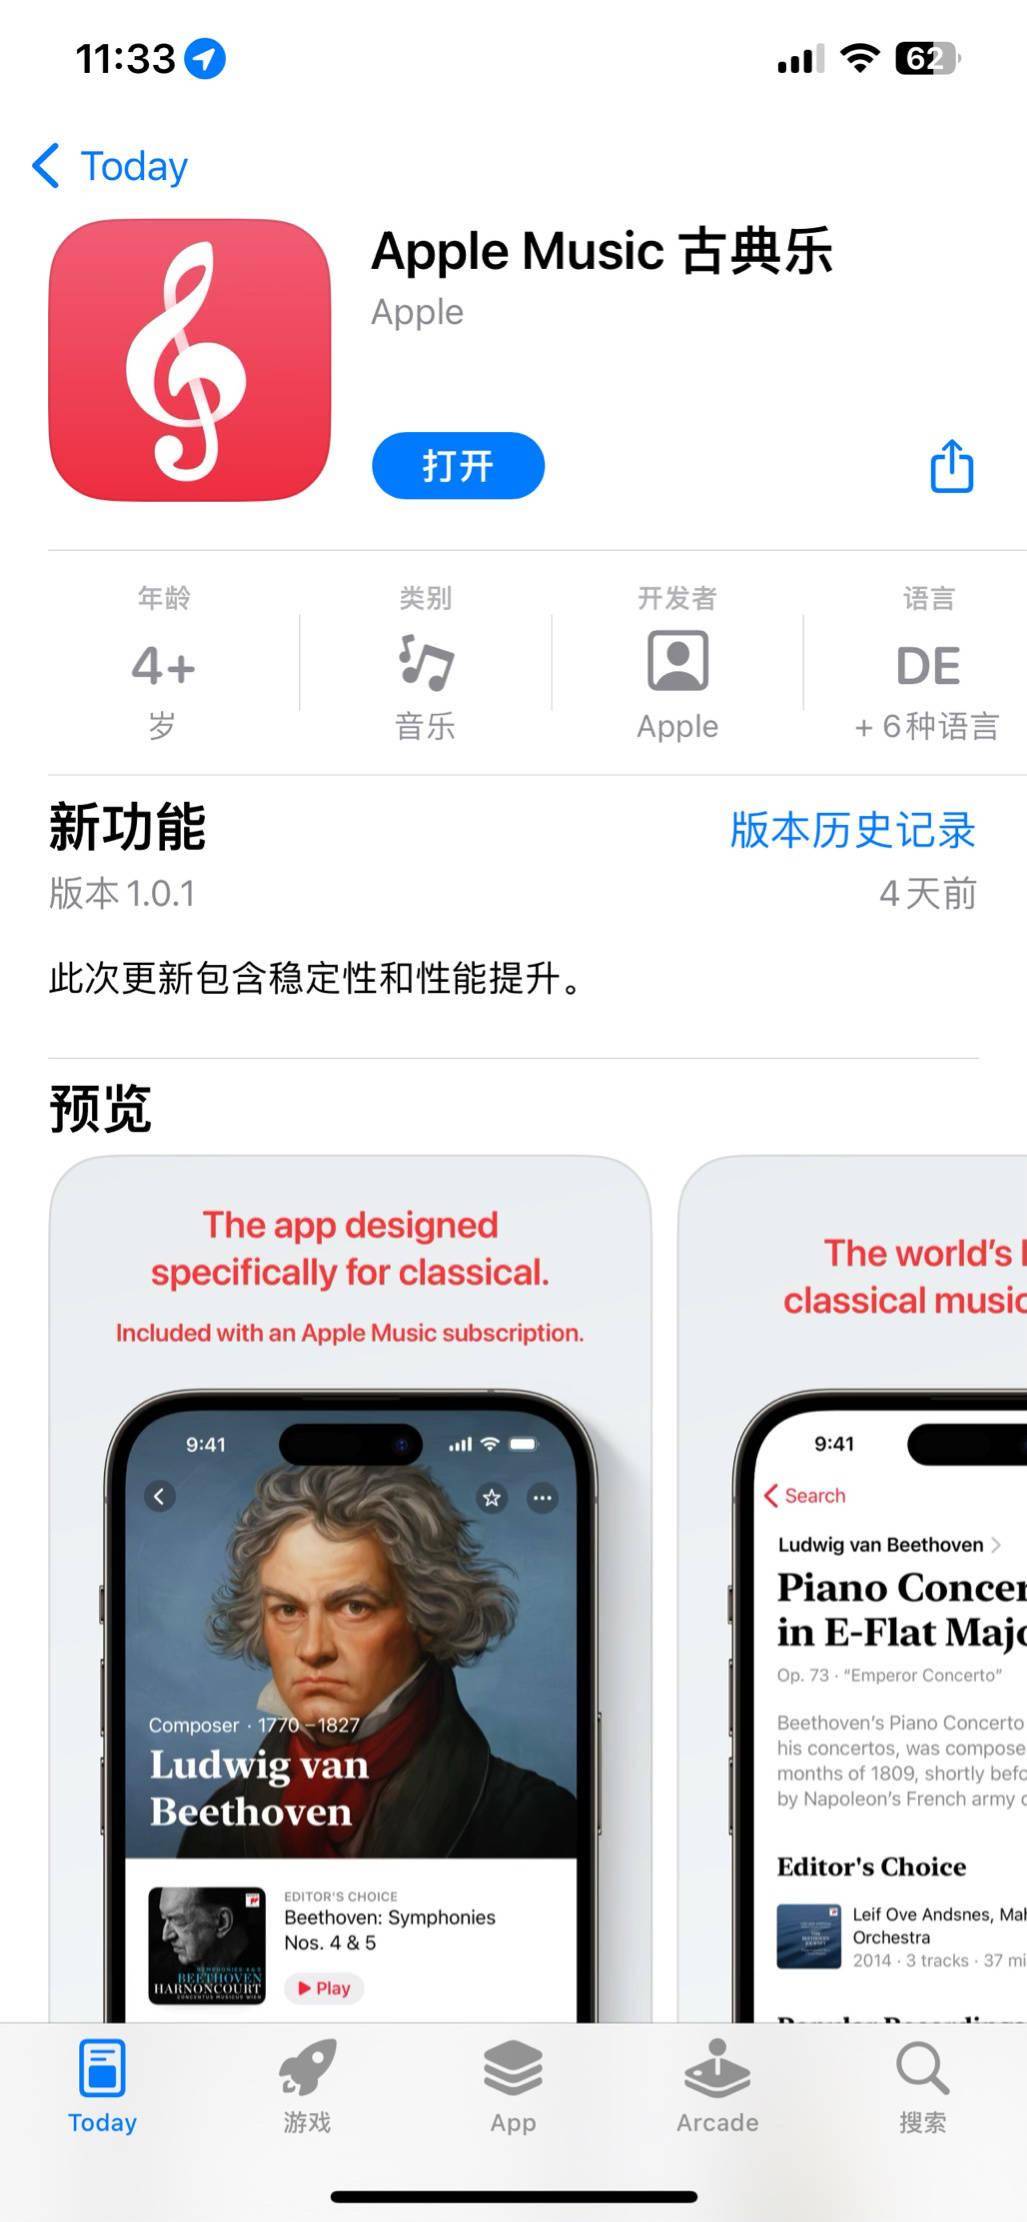 为了支持古典音乐复杂的元信息 苹果正式上架Apple Music Classical古典乐应用